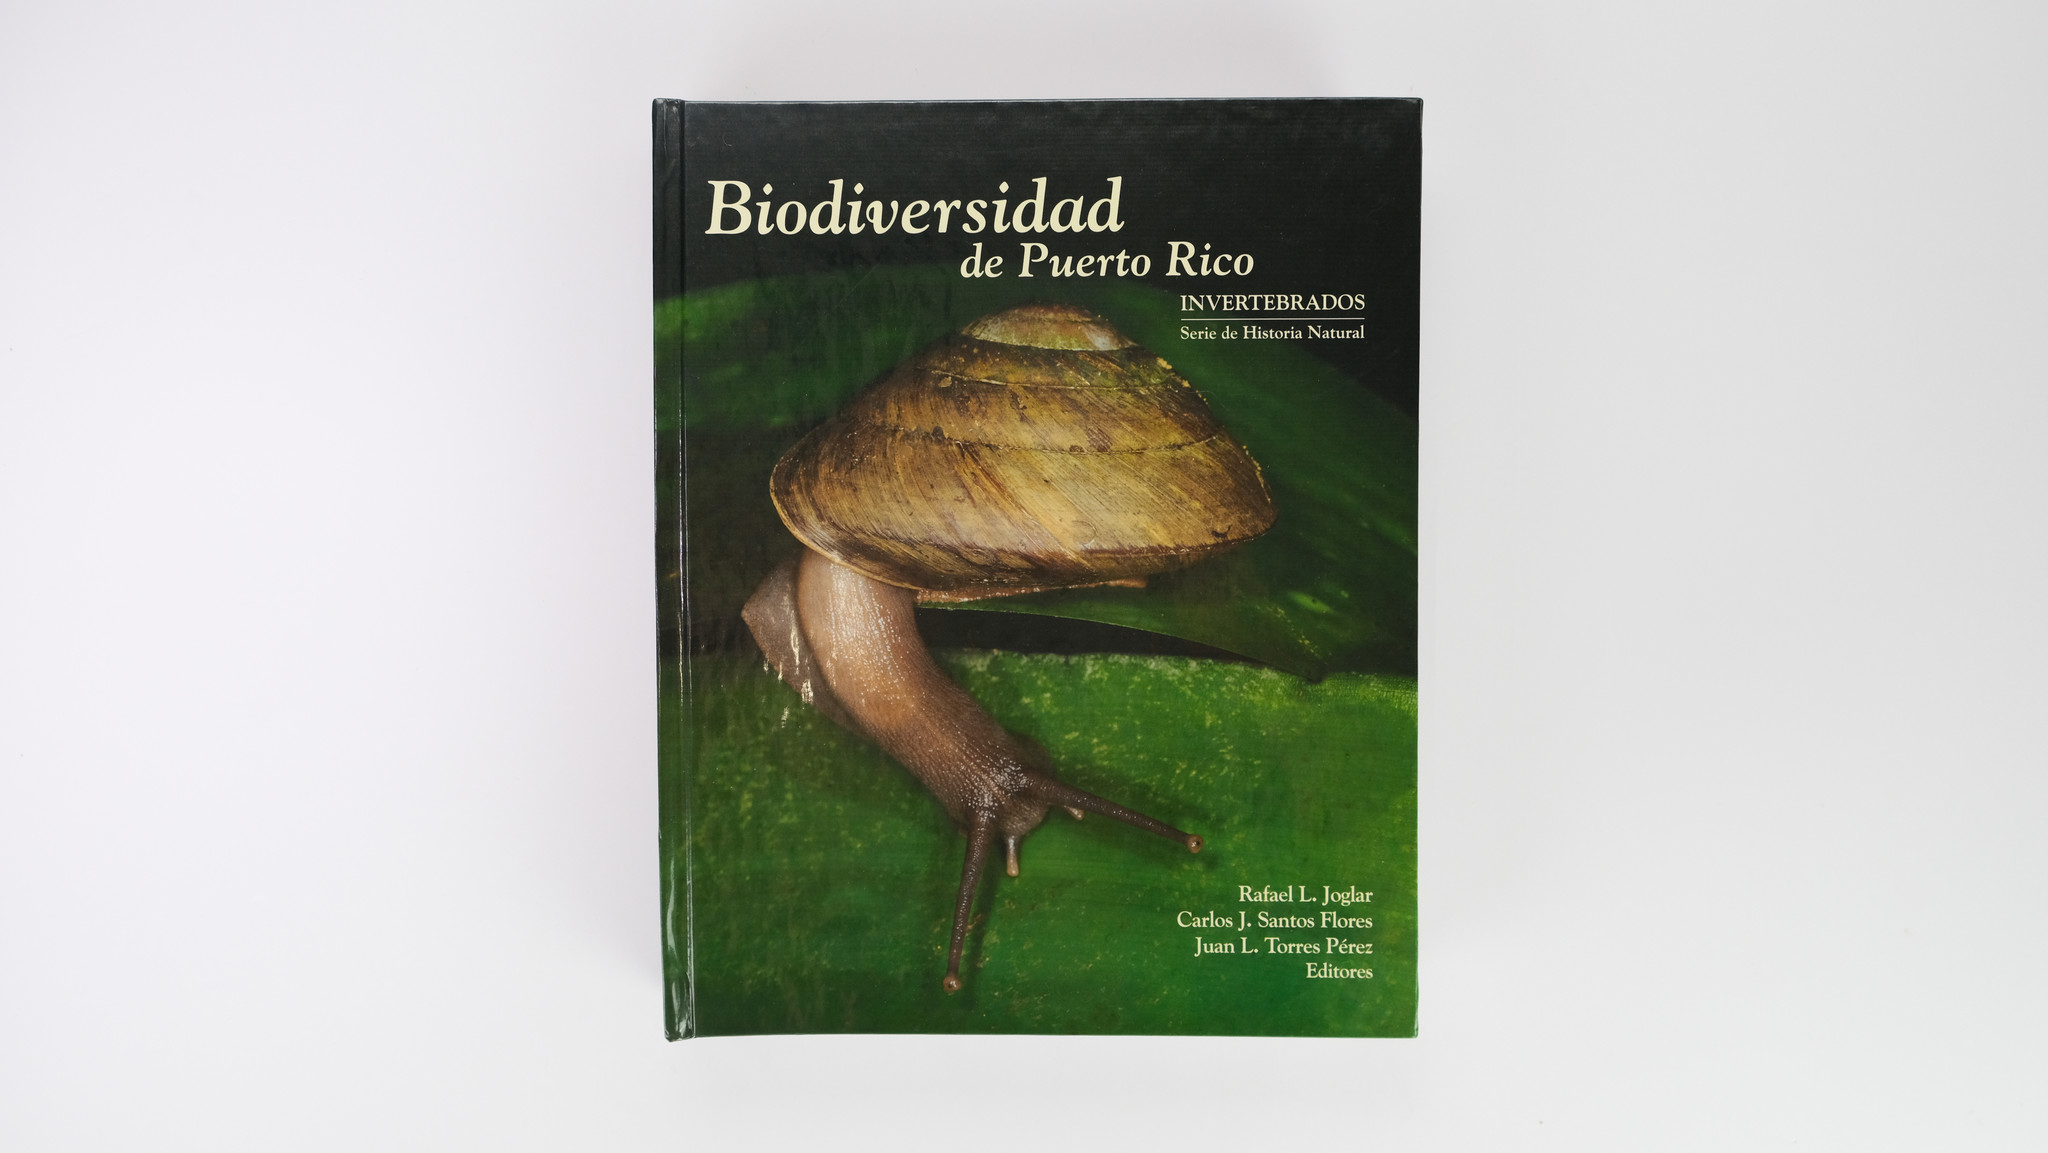 Biodiversidad de Puerto Rico: Invertebrados - Serie de Historia Natural